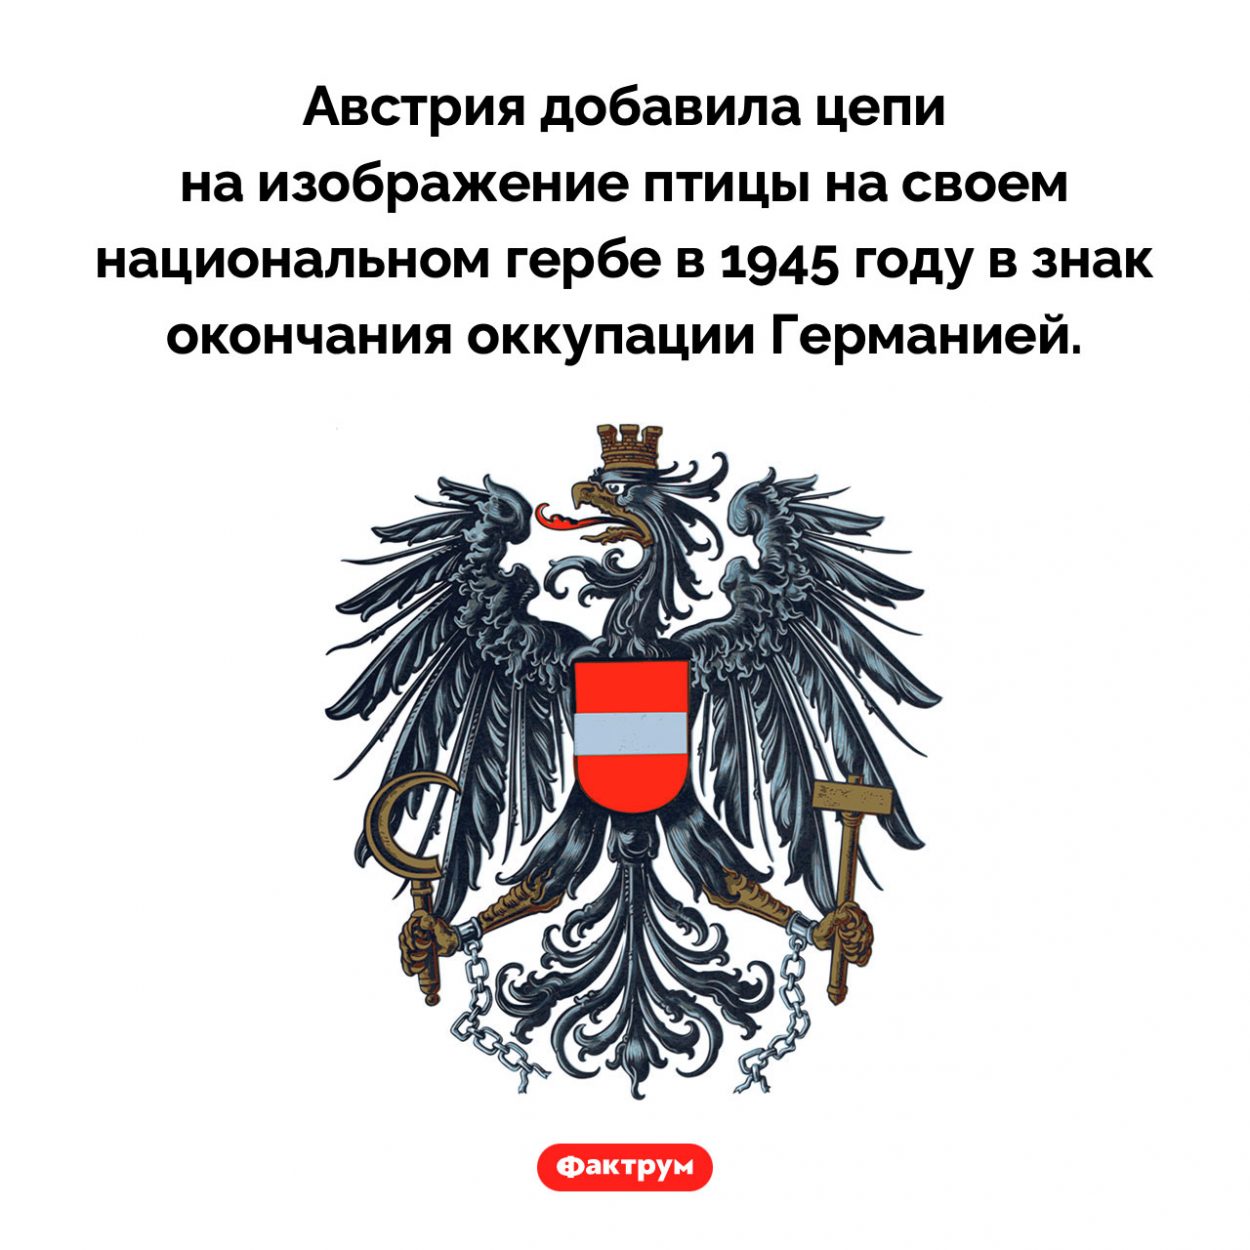 Почему на гербе Австрии орел в разорванных цепях. Австрия добавила цепи на изображение птицы на своем национальном гербе в 1945 году в знак окончания оккупации Германией.